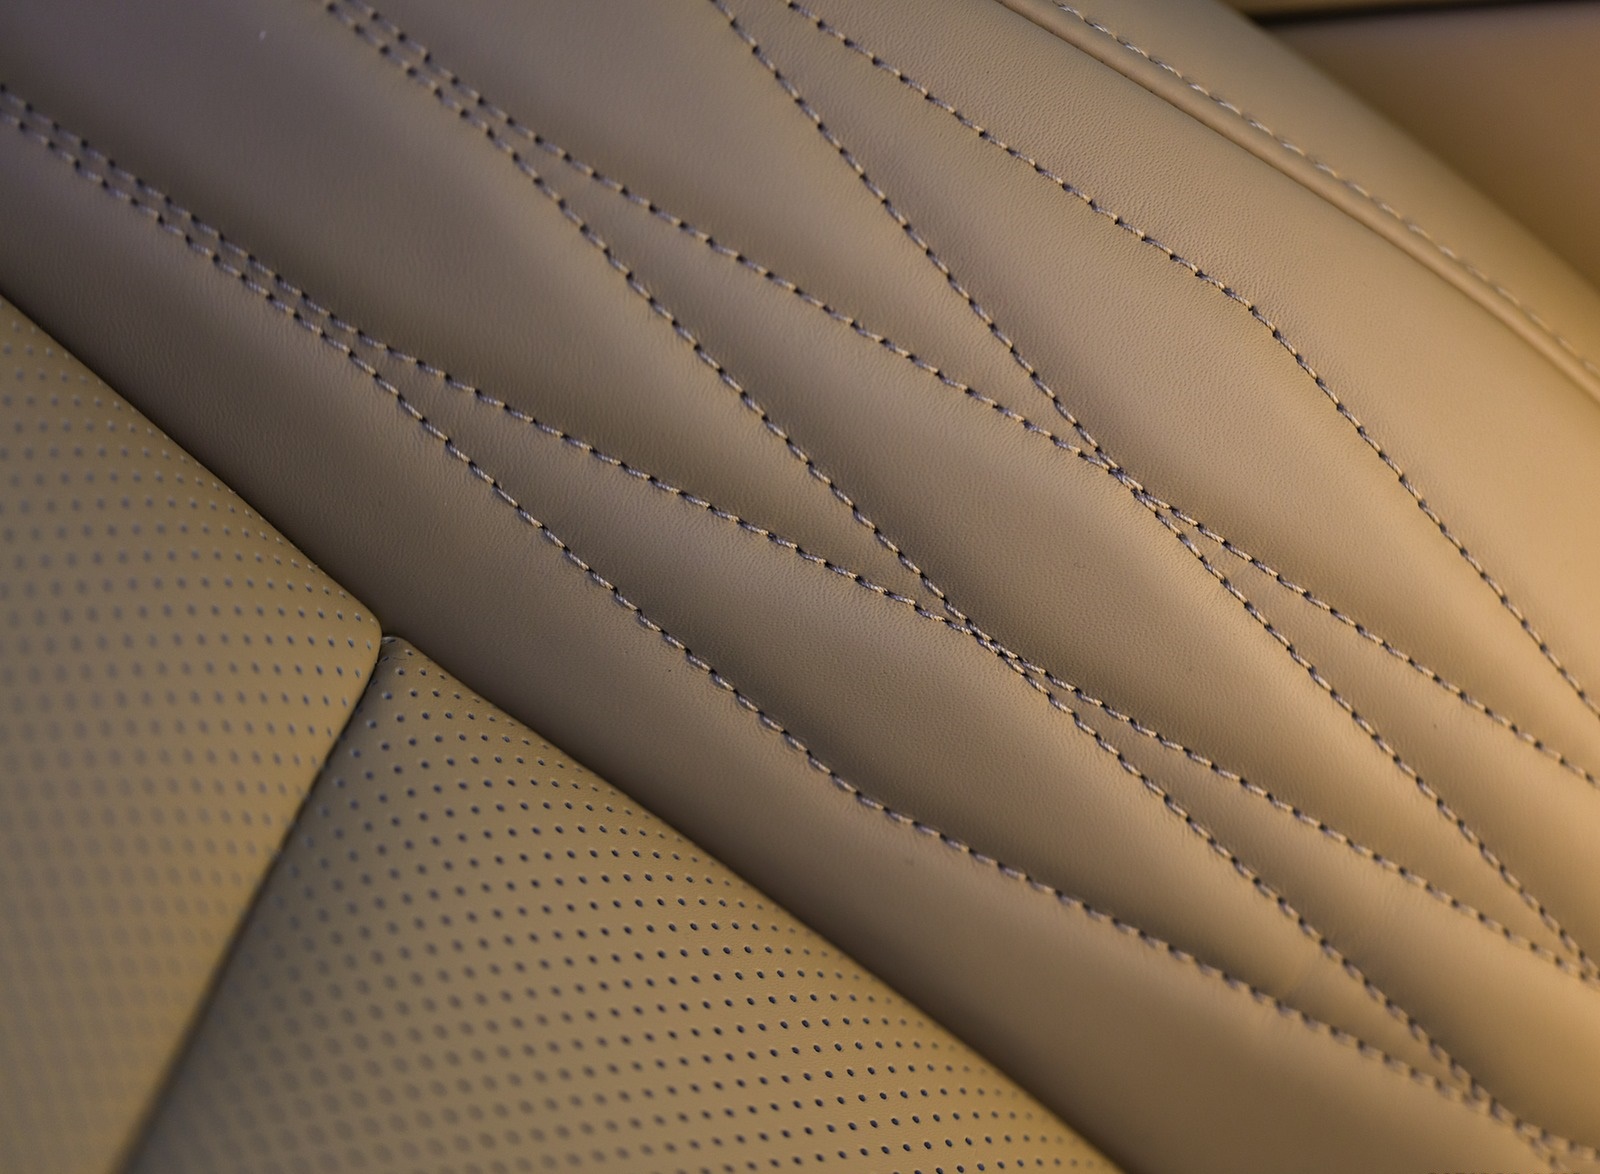 2020 Kia Cadenza Interior Seats Wallpapers #34 of 42